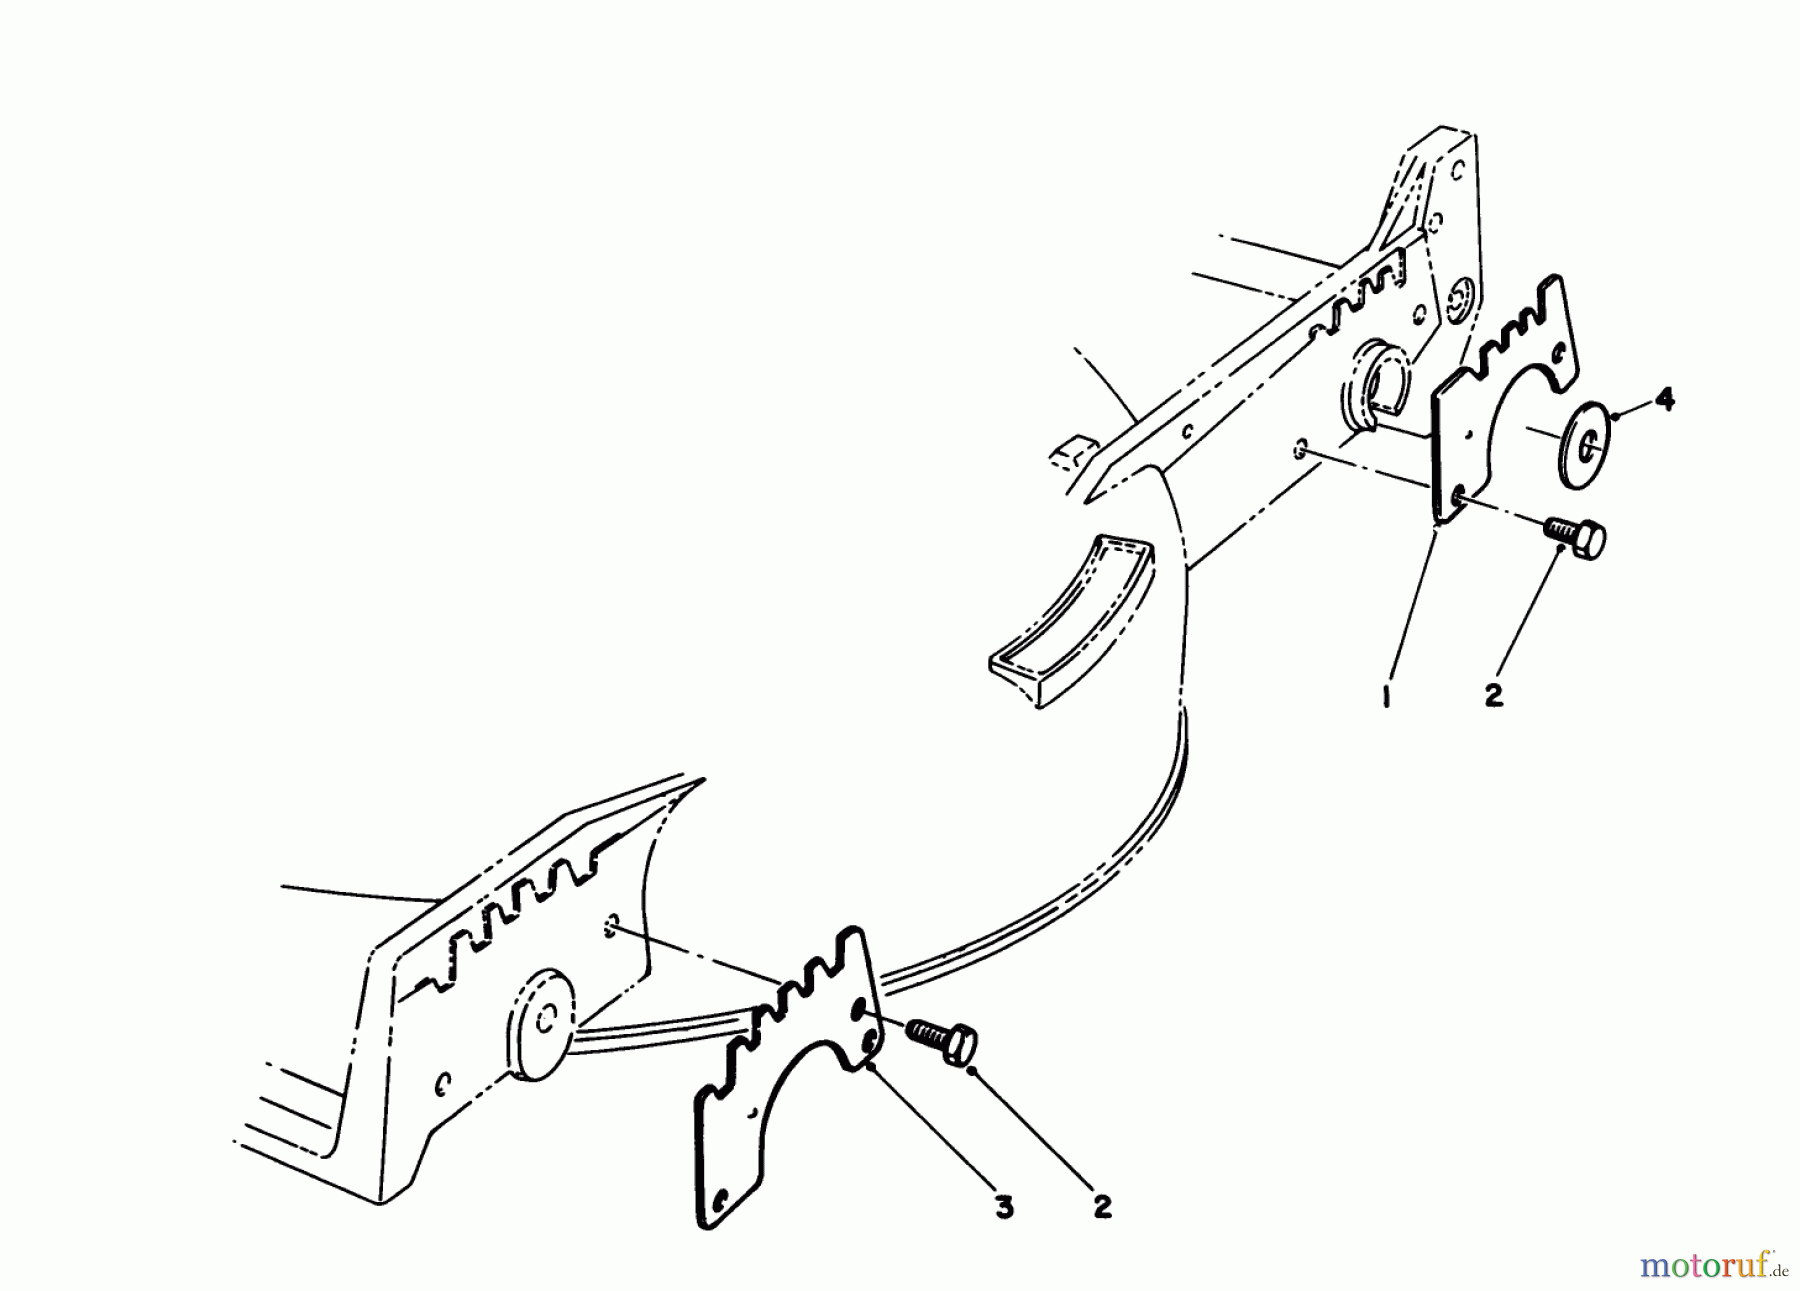  Toro Neu Mowers, Walk-Behind Seite 1 20588 - Toro Lawnmower, 1990 (0000001-0999999) WEAR PLATE KIT MODEL NO. 49-4080 (OPTIONAL)